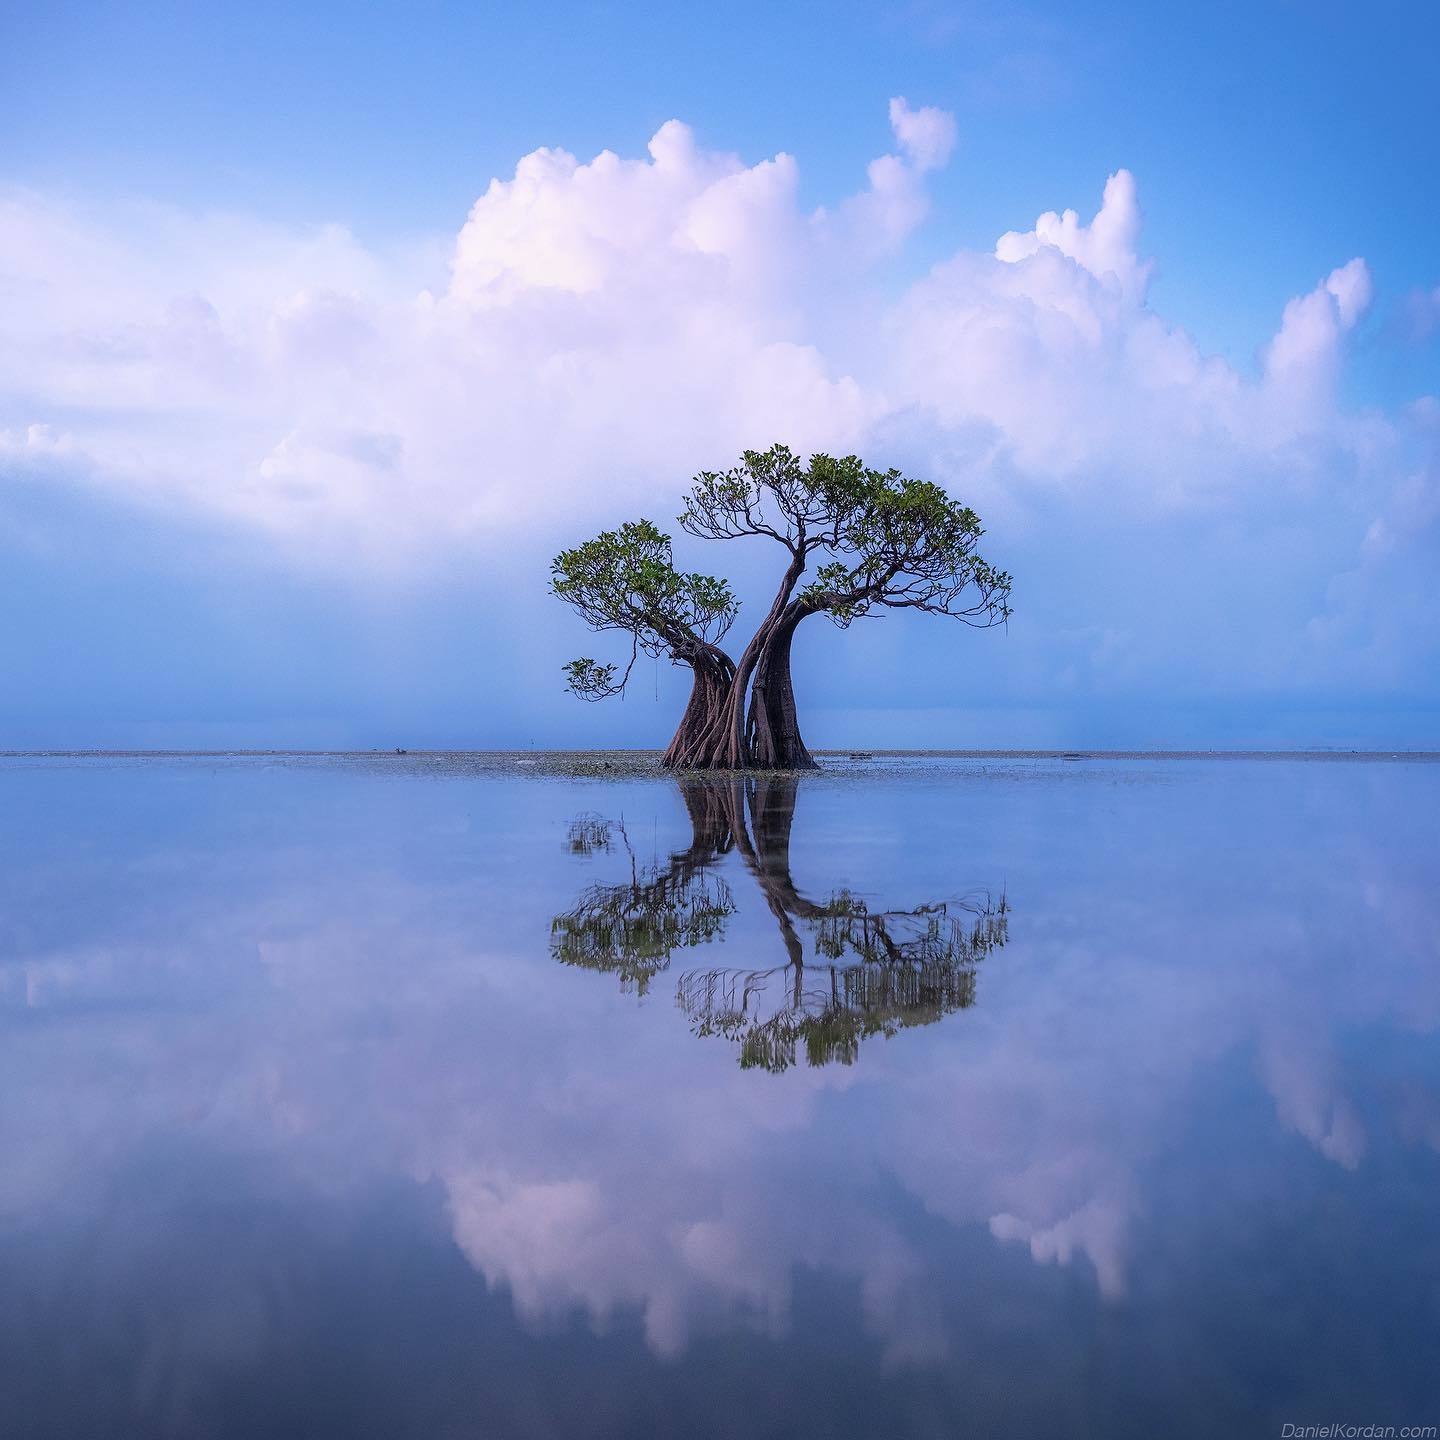  海与树，Daniel Kordan摄于松巴岛。 